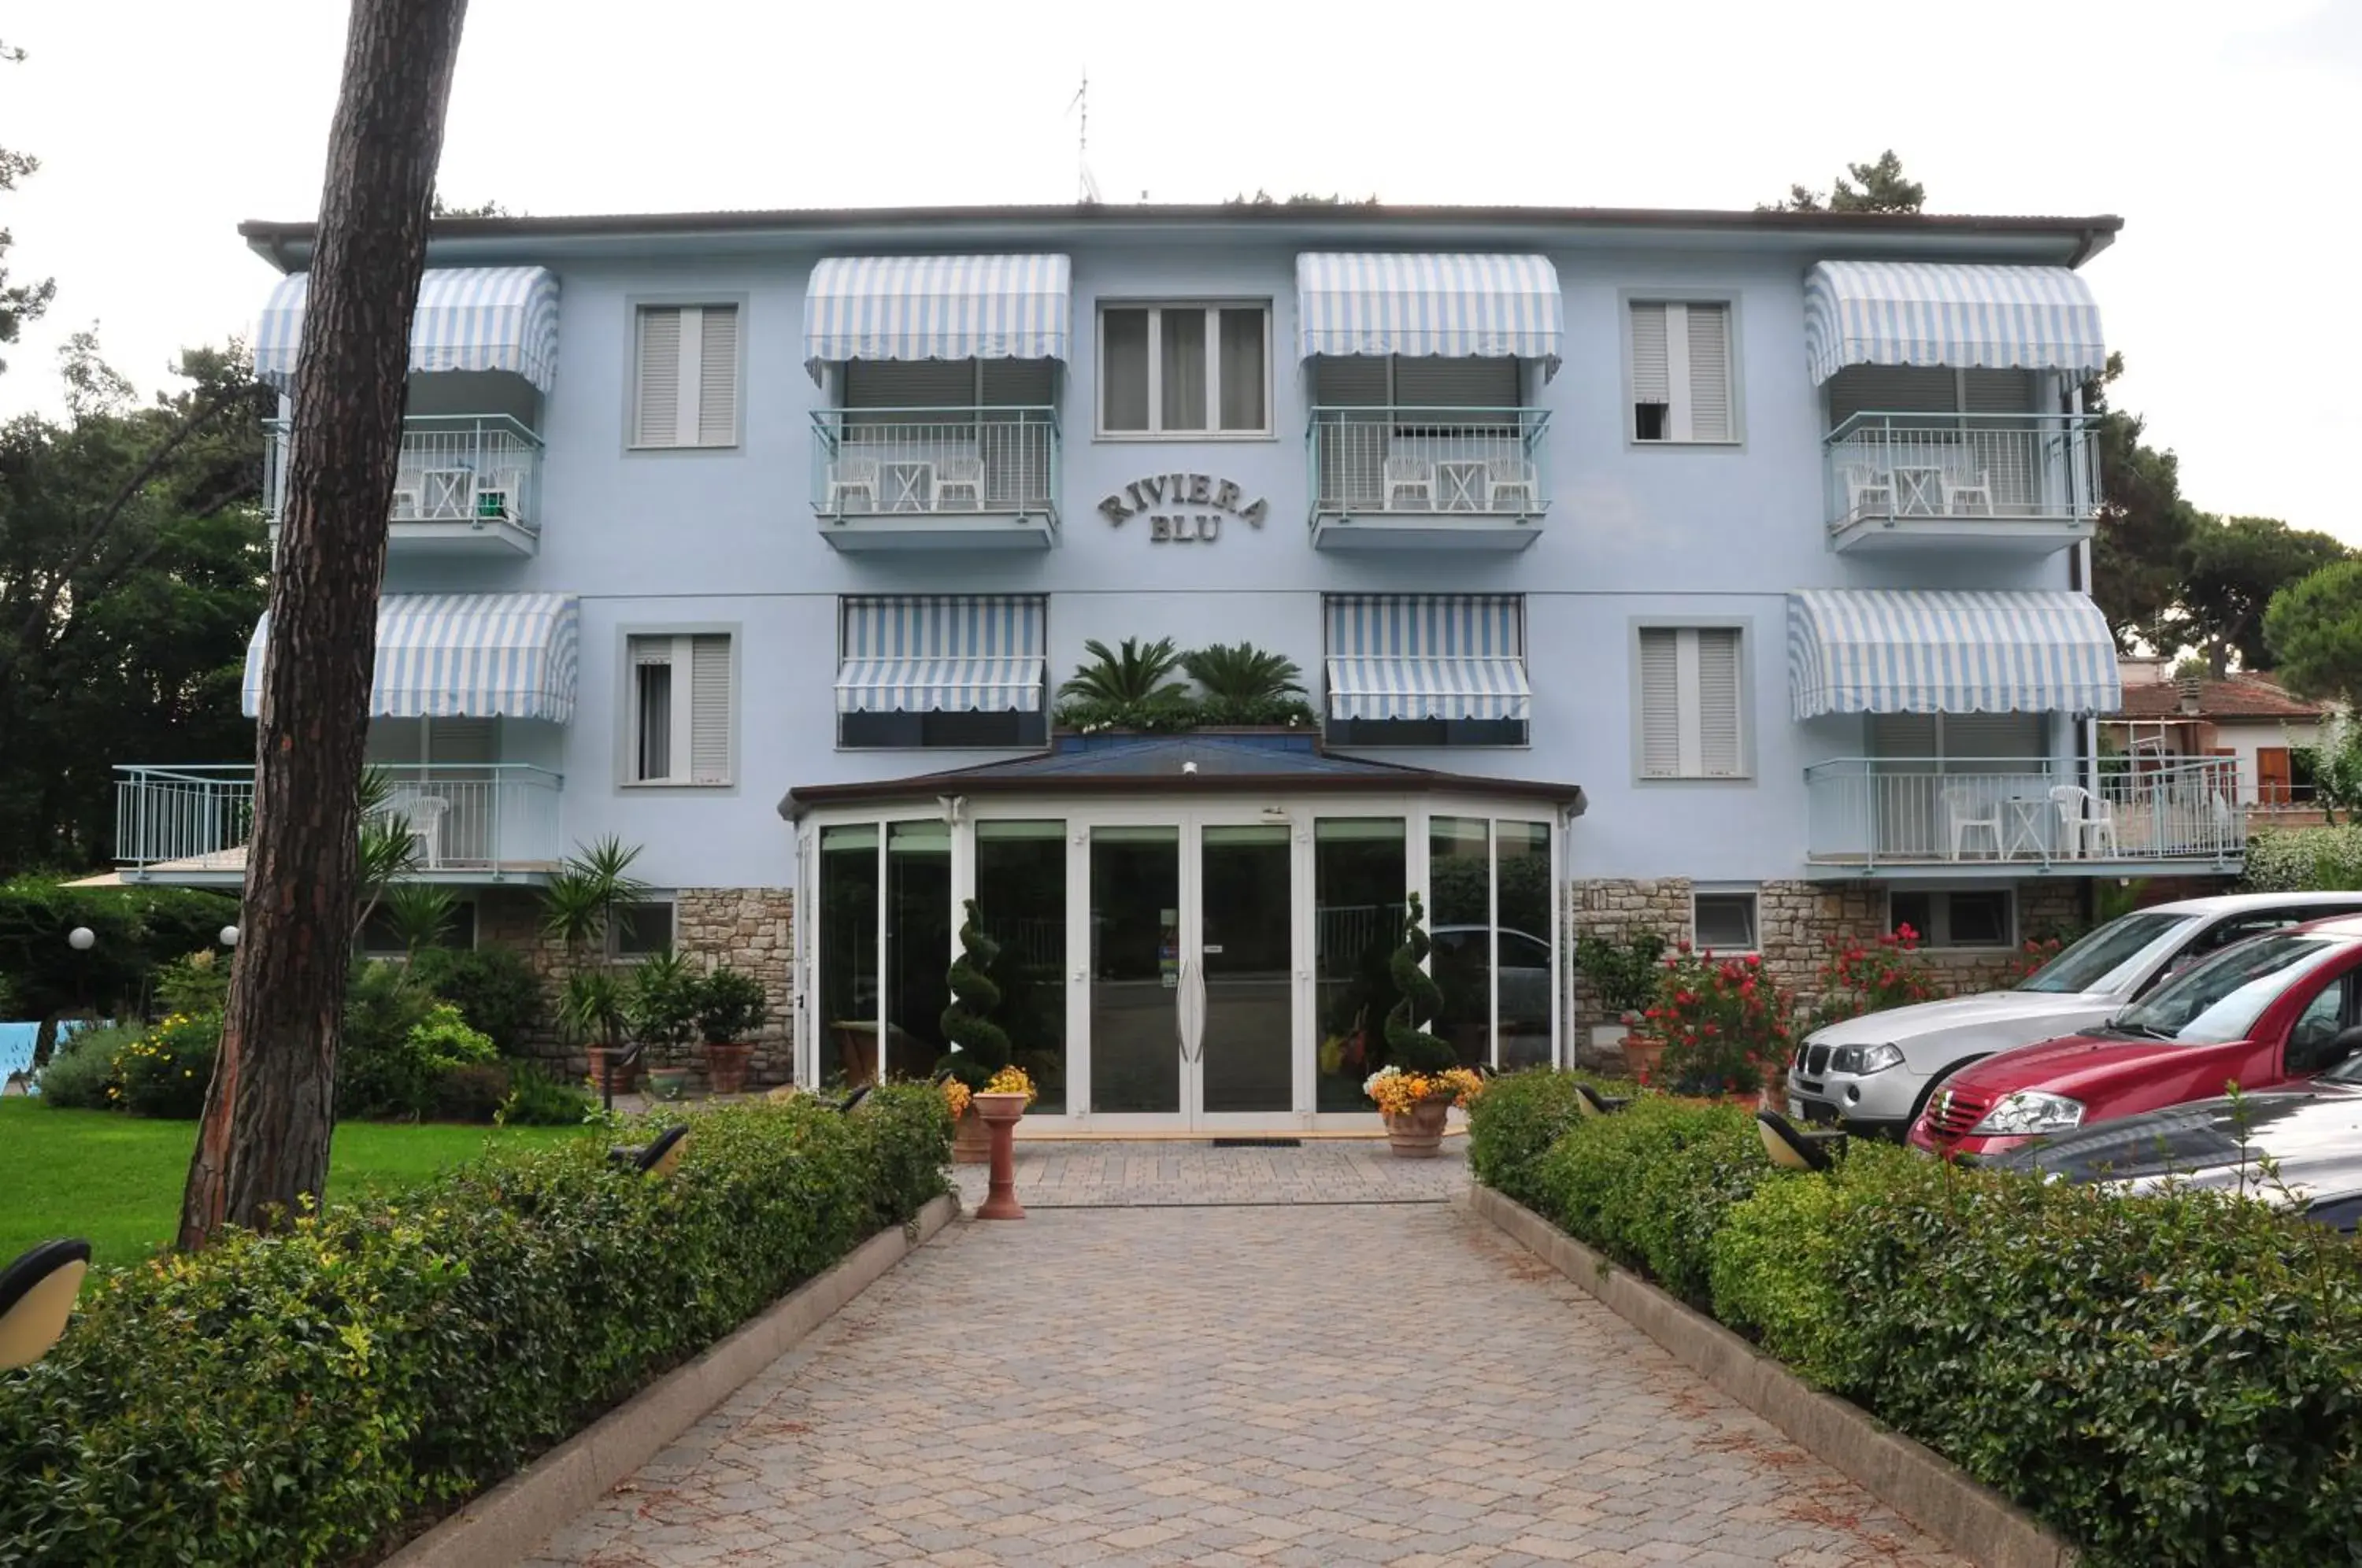 Facade/entrance, Property Building in Hotel Riviera Blu